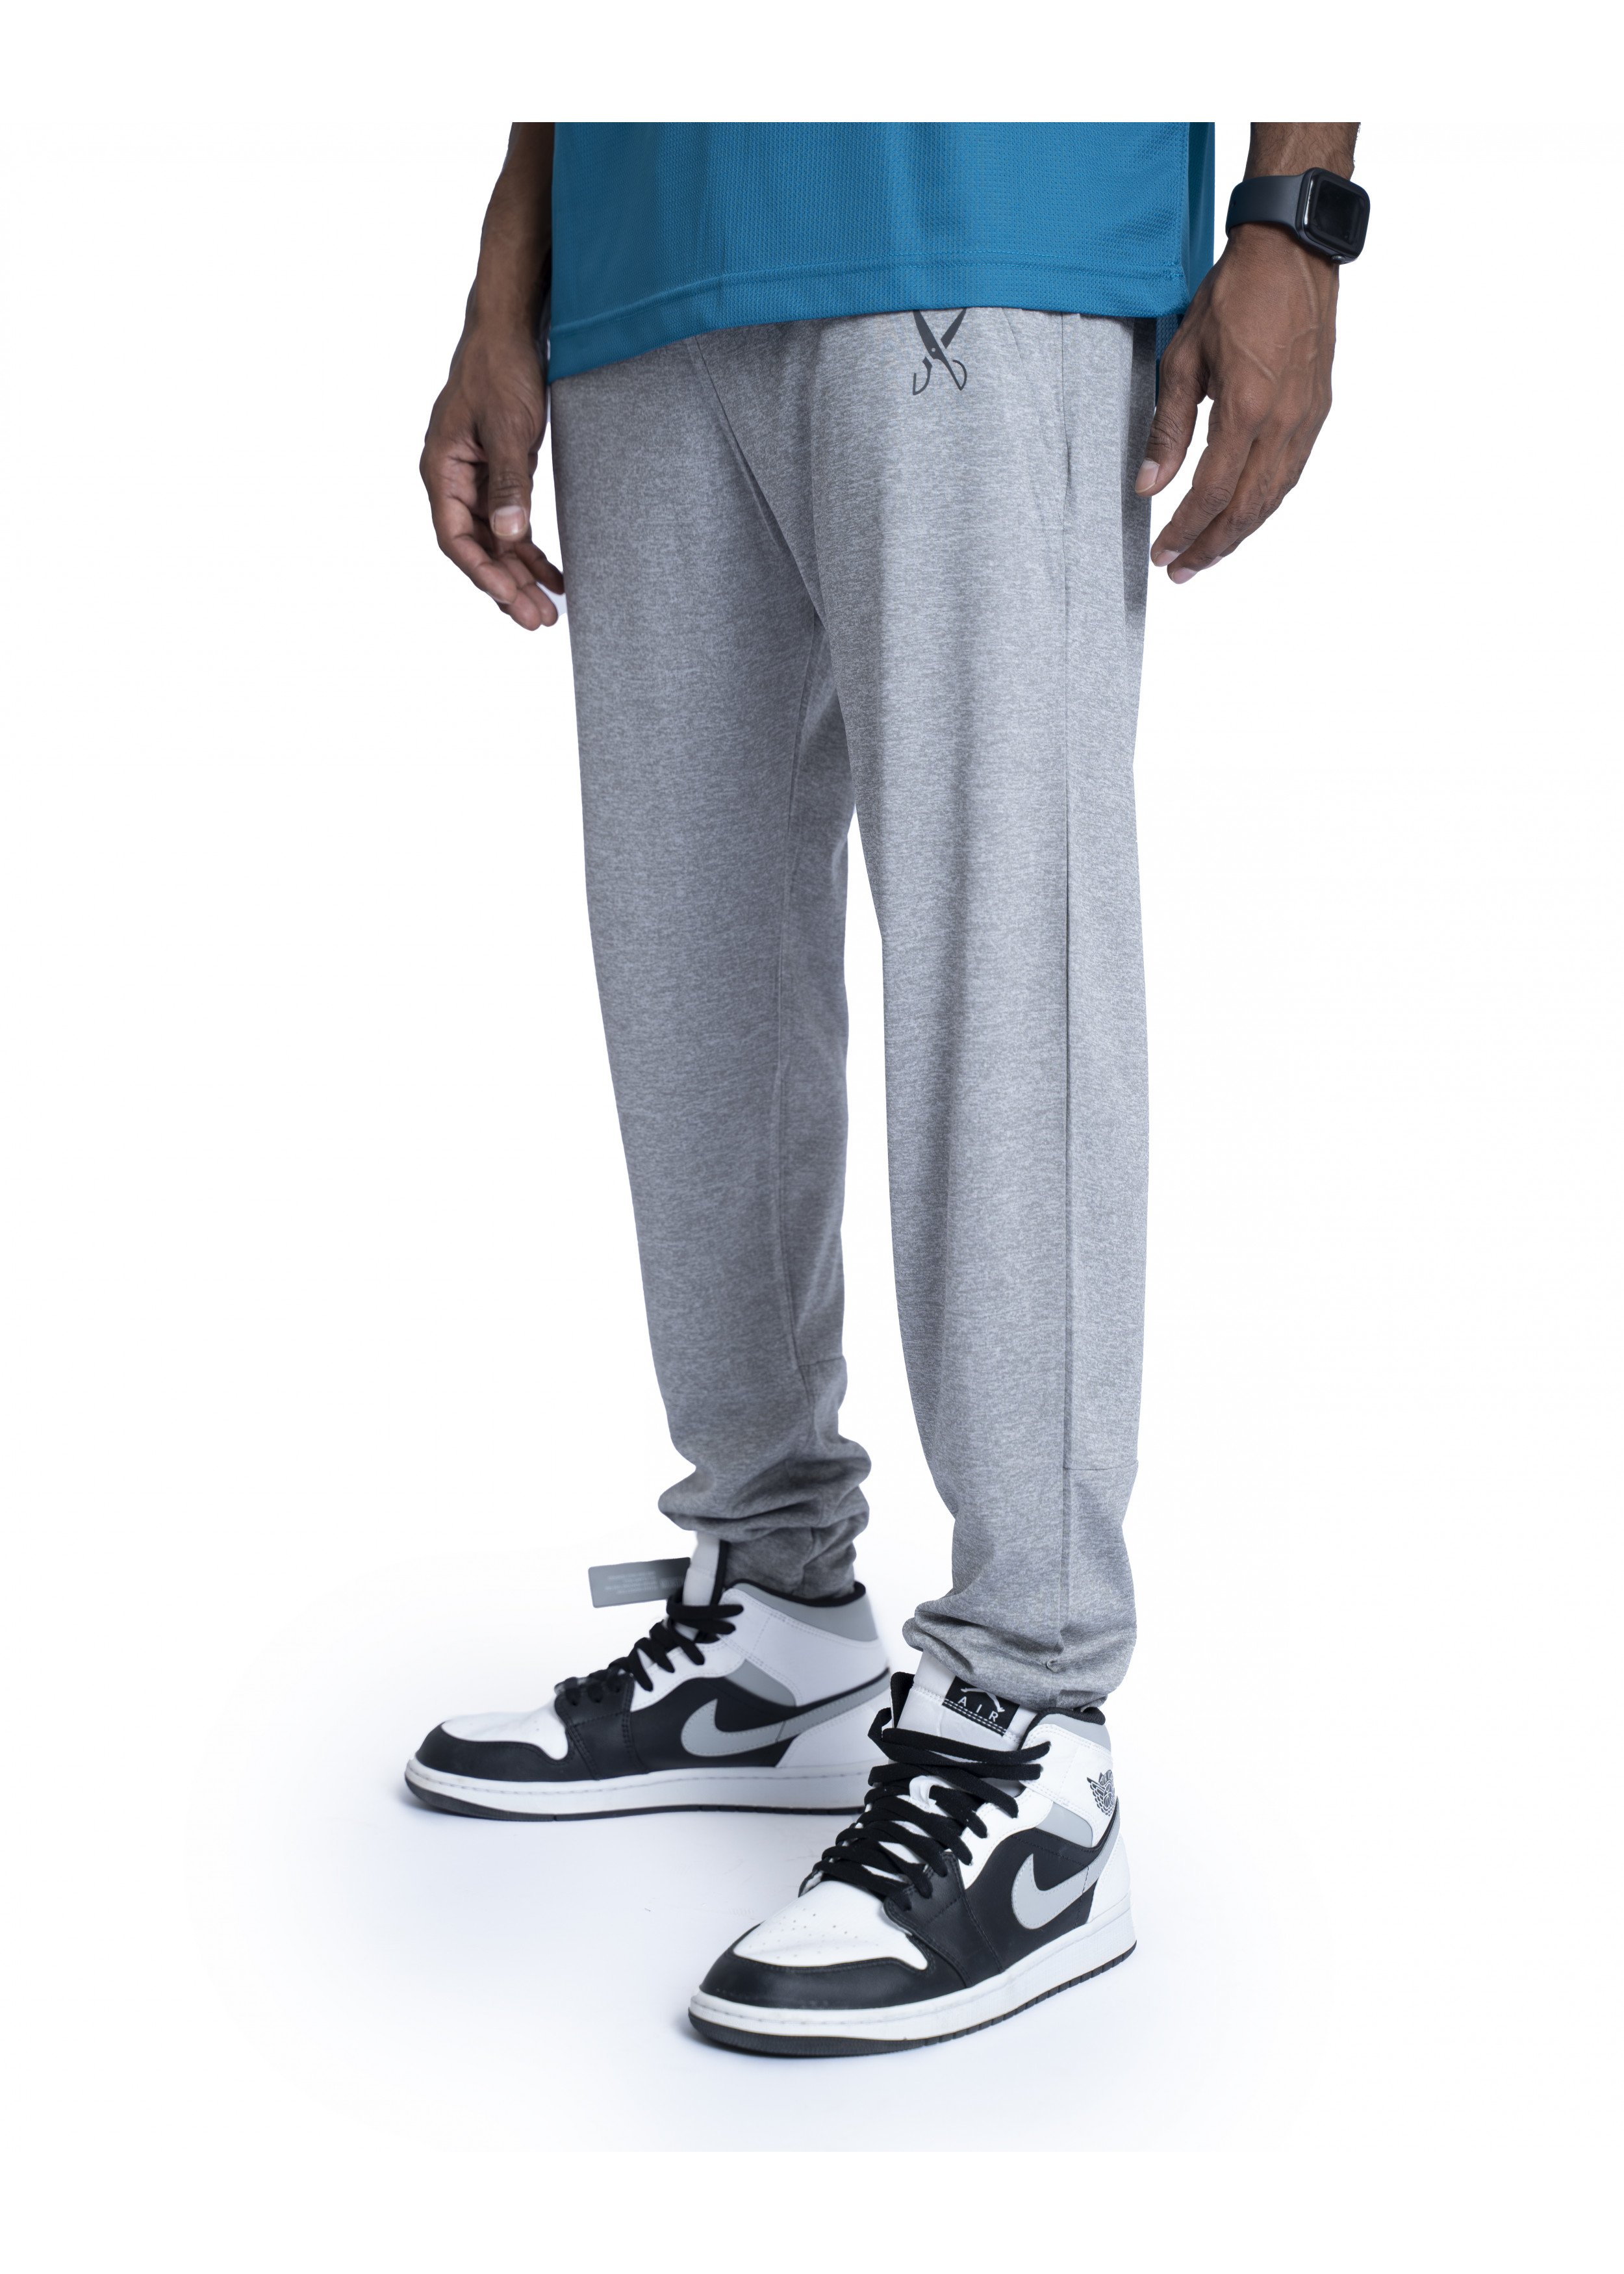 Men's sports Pants -Gray